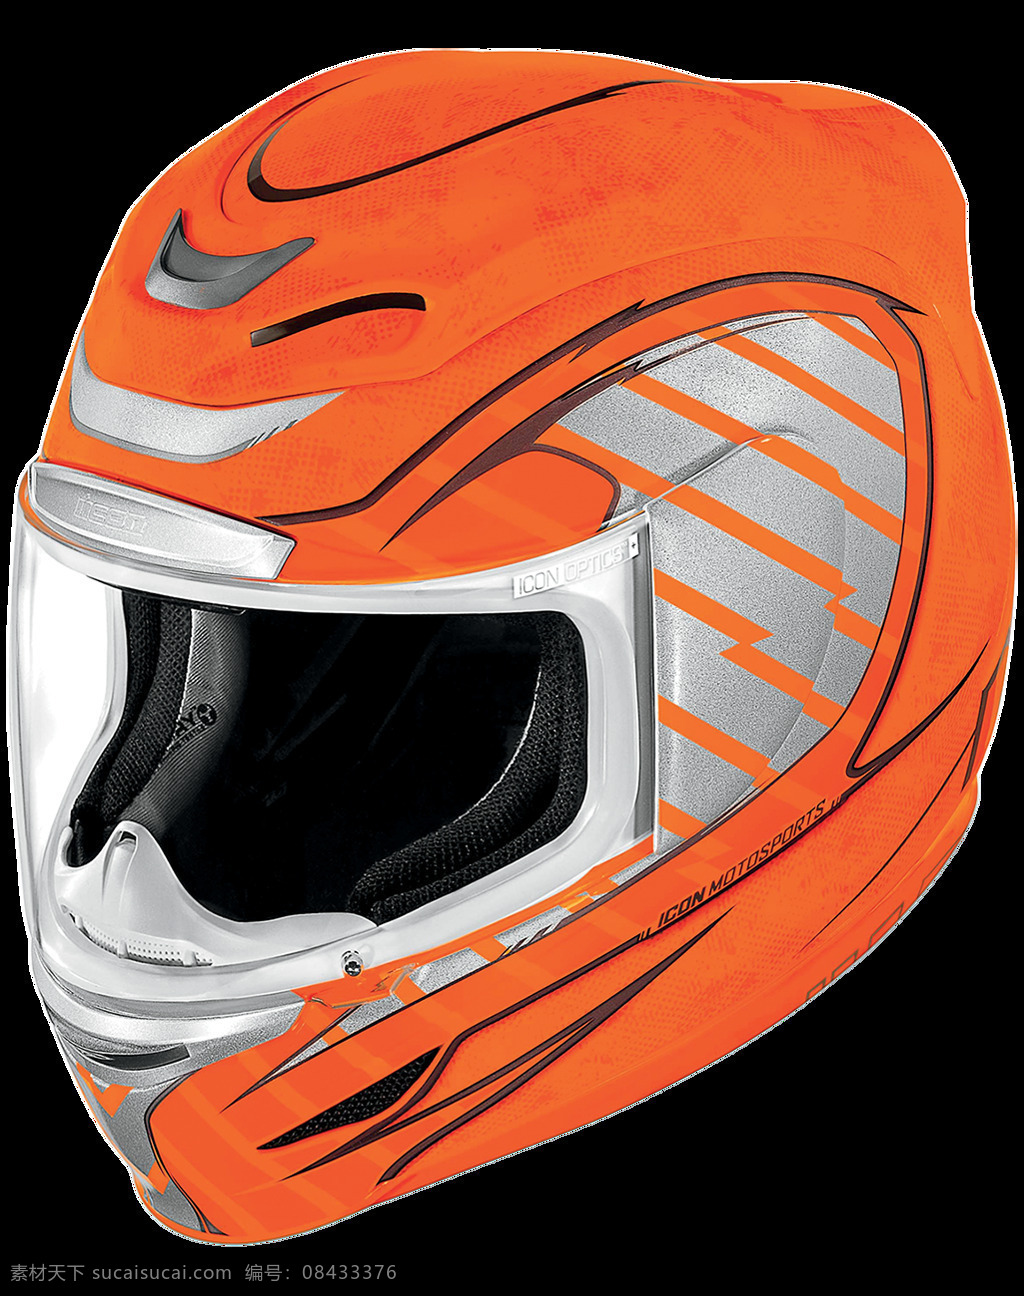 橙色 摩托车 头盔 免 抠 透明 图 层 越野 哈雷头盔 复古 摩托车半头盔 赛车头盔 帽子 安全帽 头盔素材 摩托头盔海报